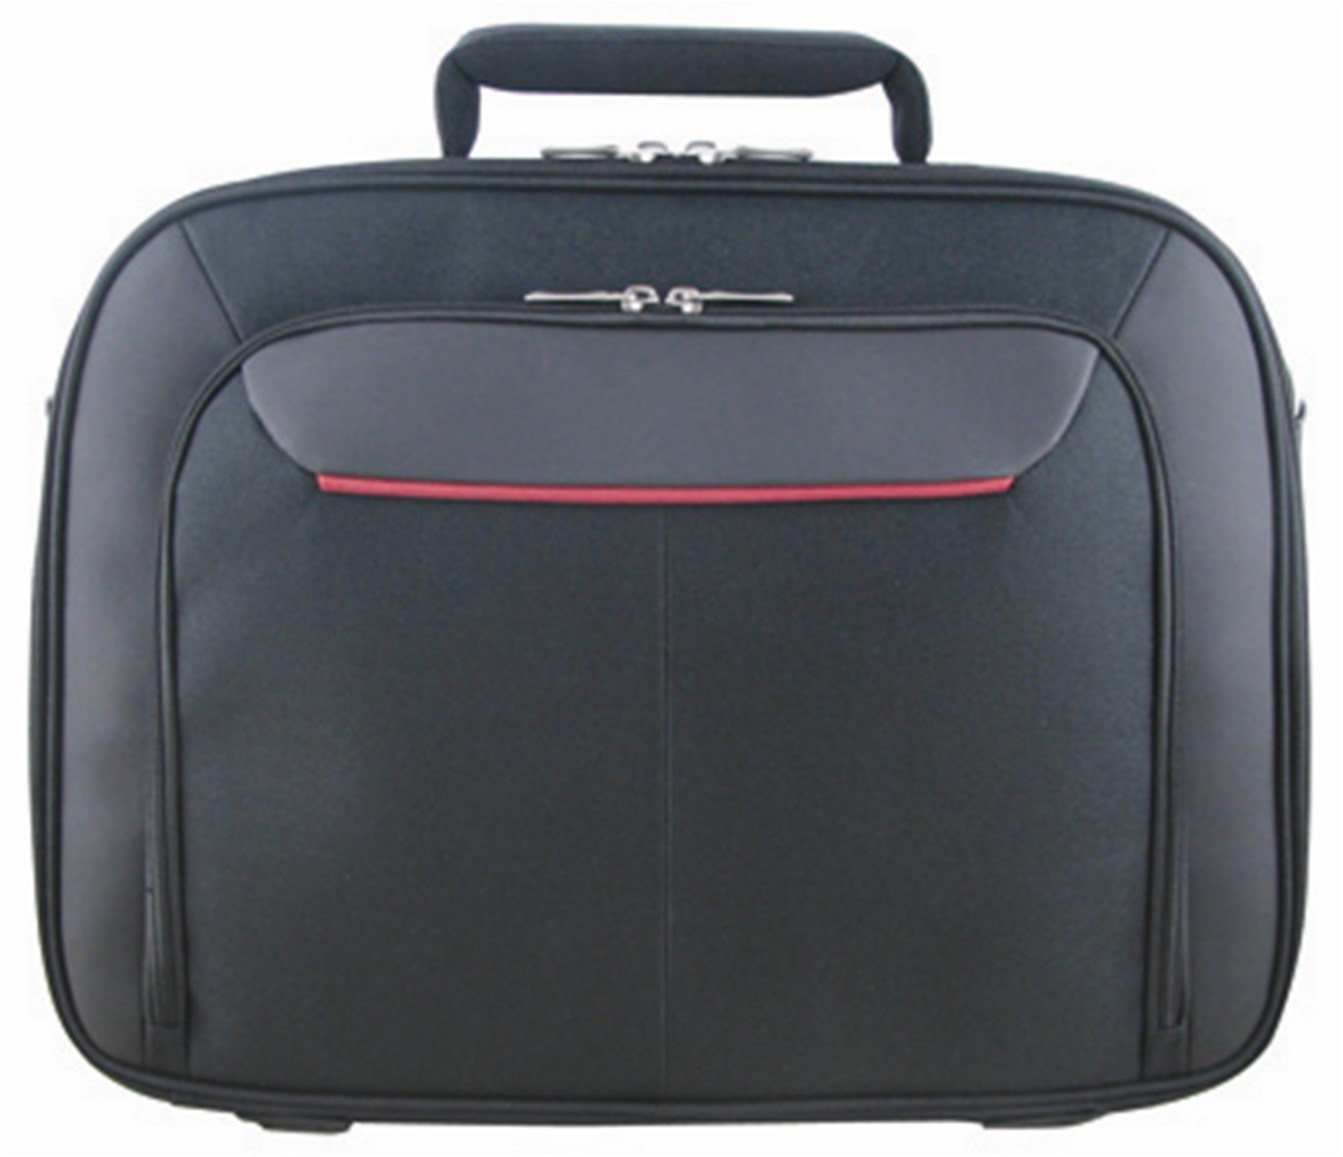 Business Laptop Bag with Single Shoulder Strap for Travel (SM8562)